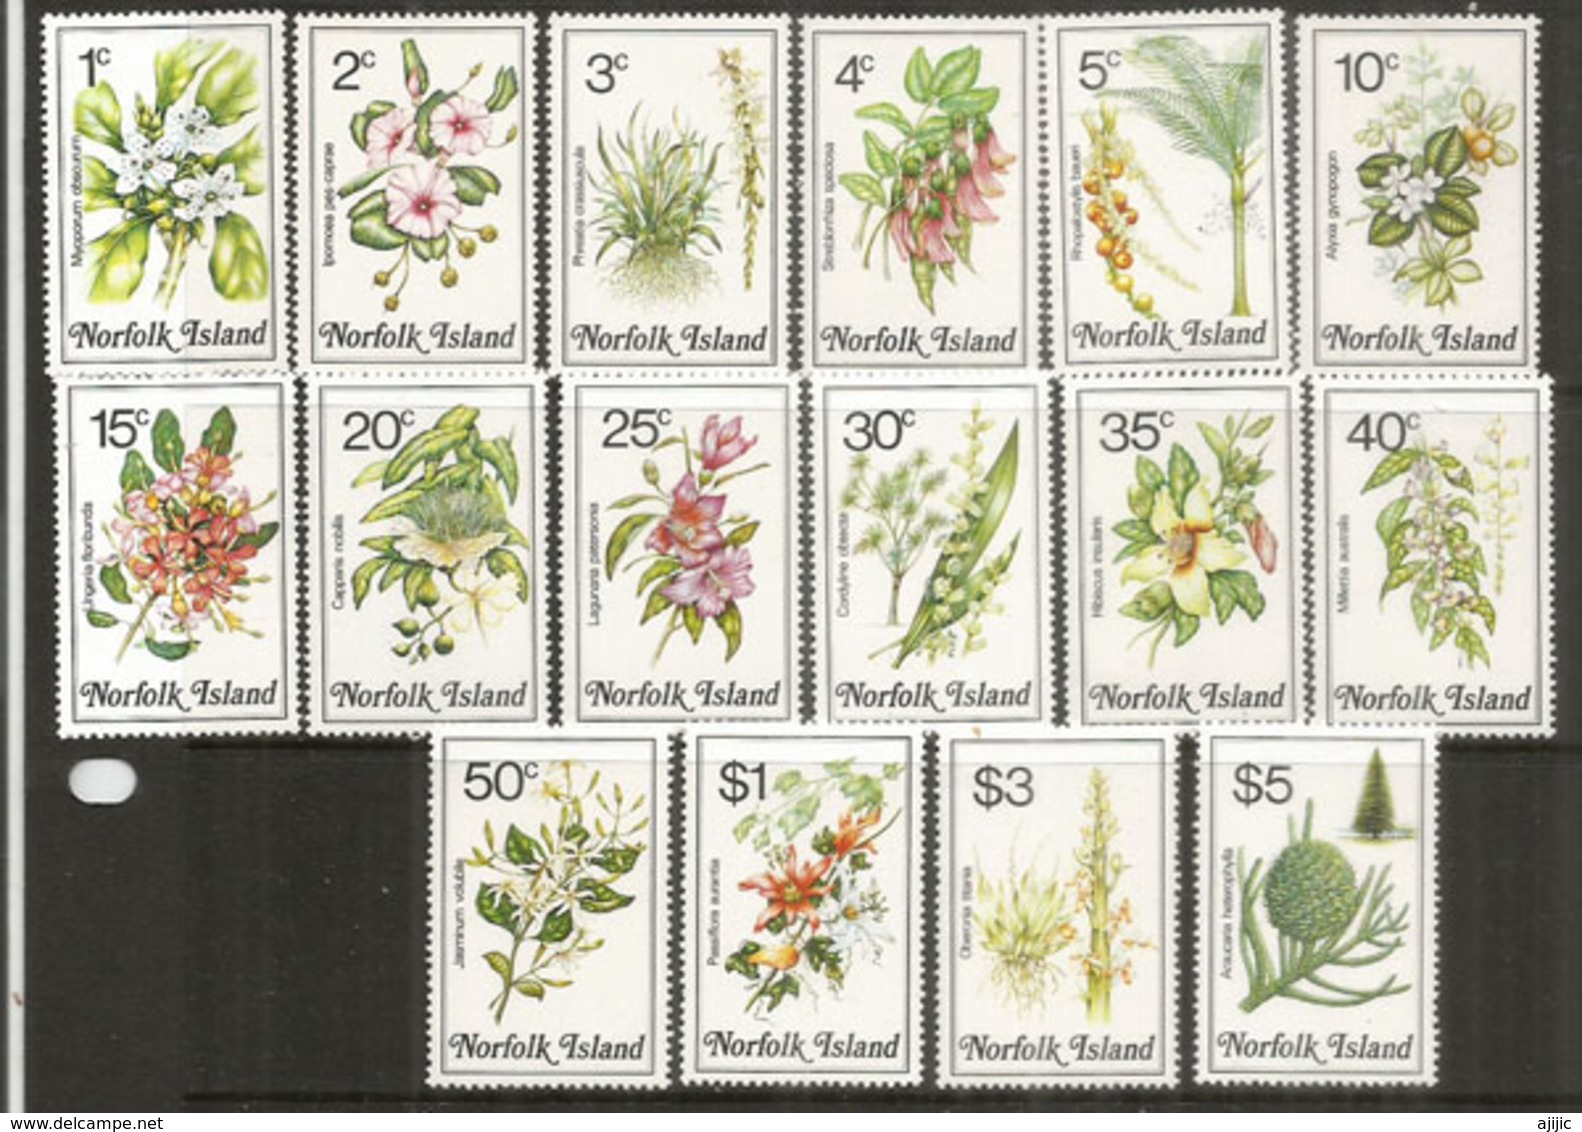 Les Fleurs Et Végétation De L'ÎLE NORFOLK , Série Complète, Côte 35,00 Euro - Ile Norfolk